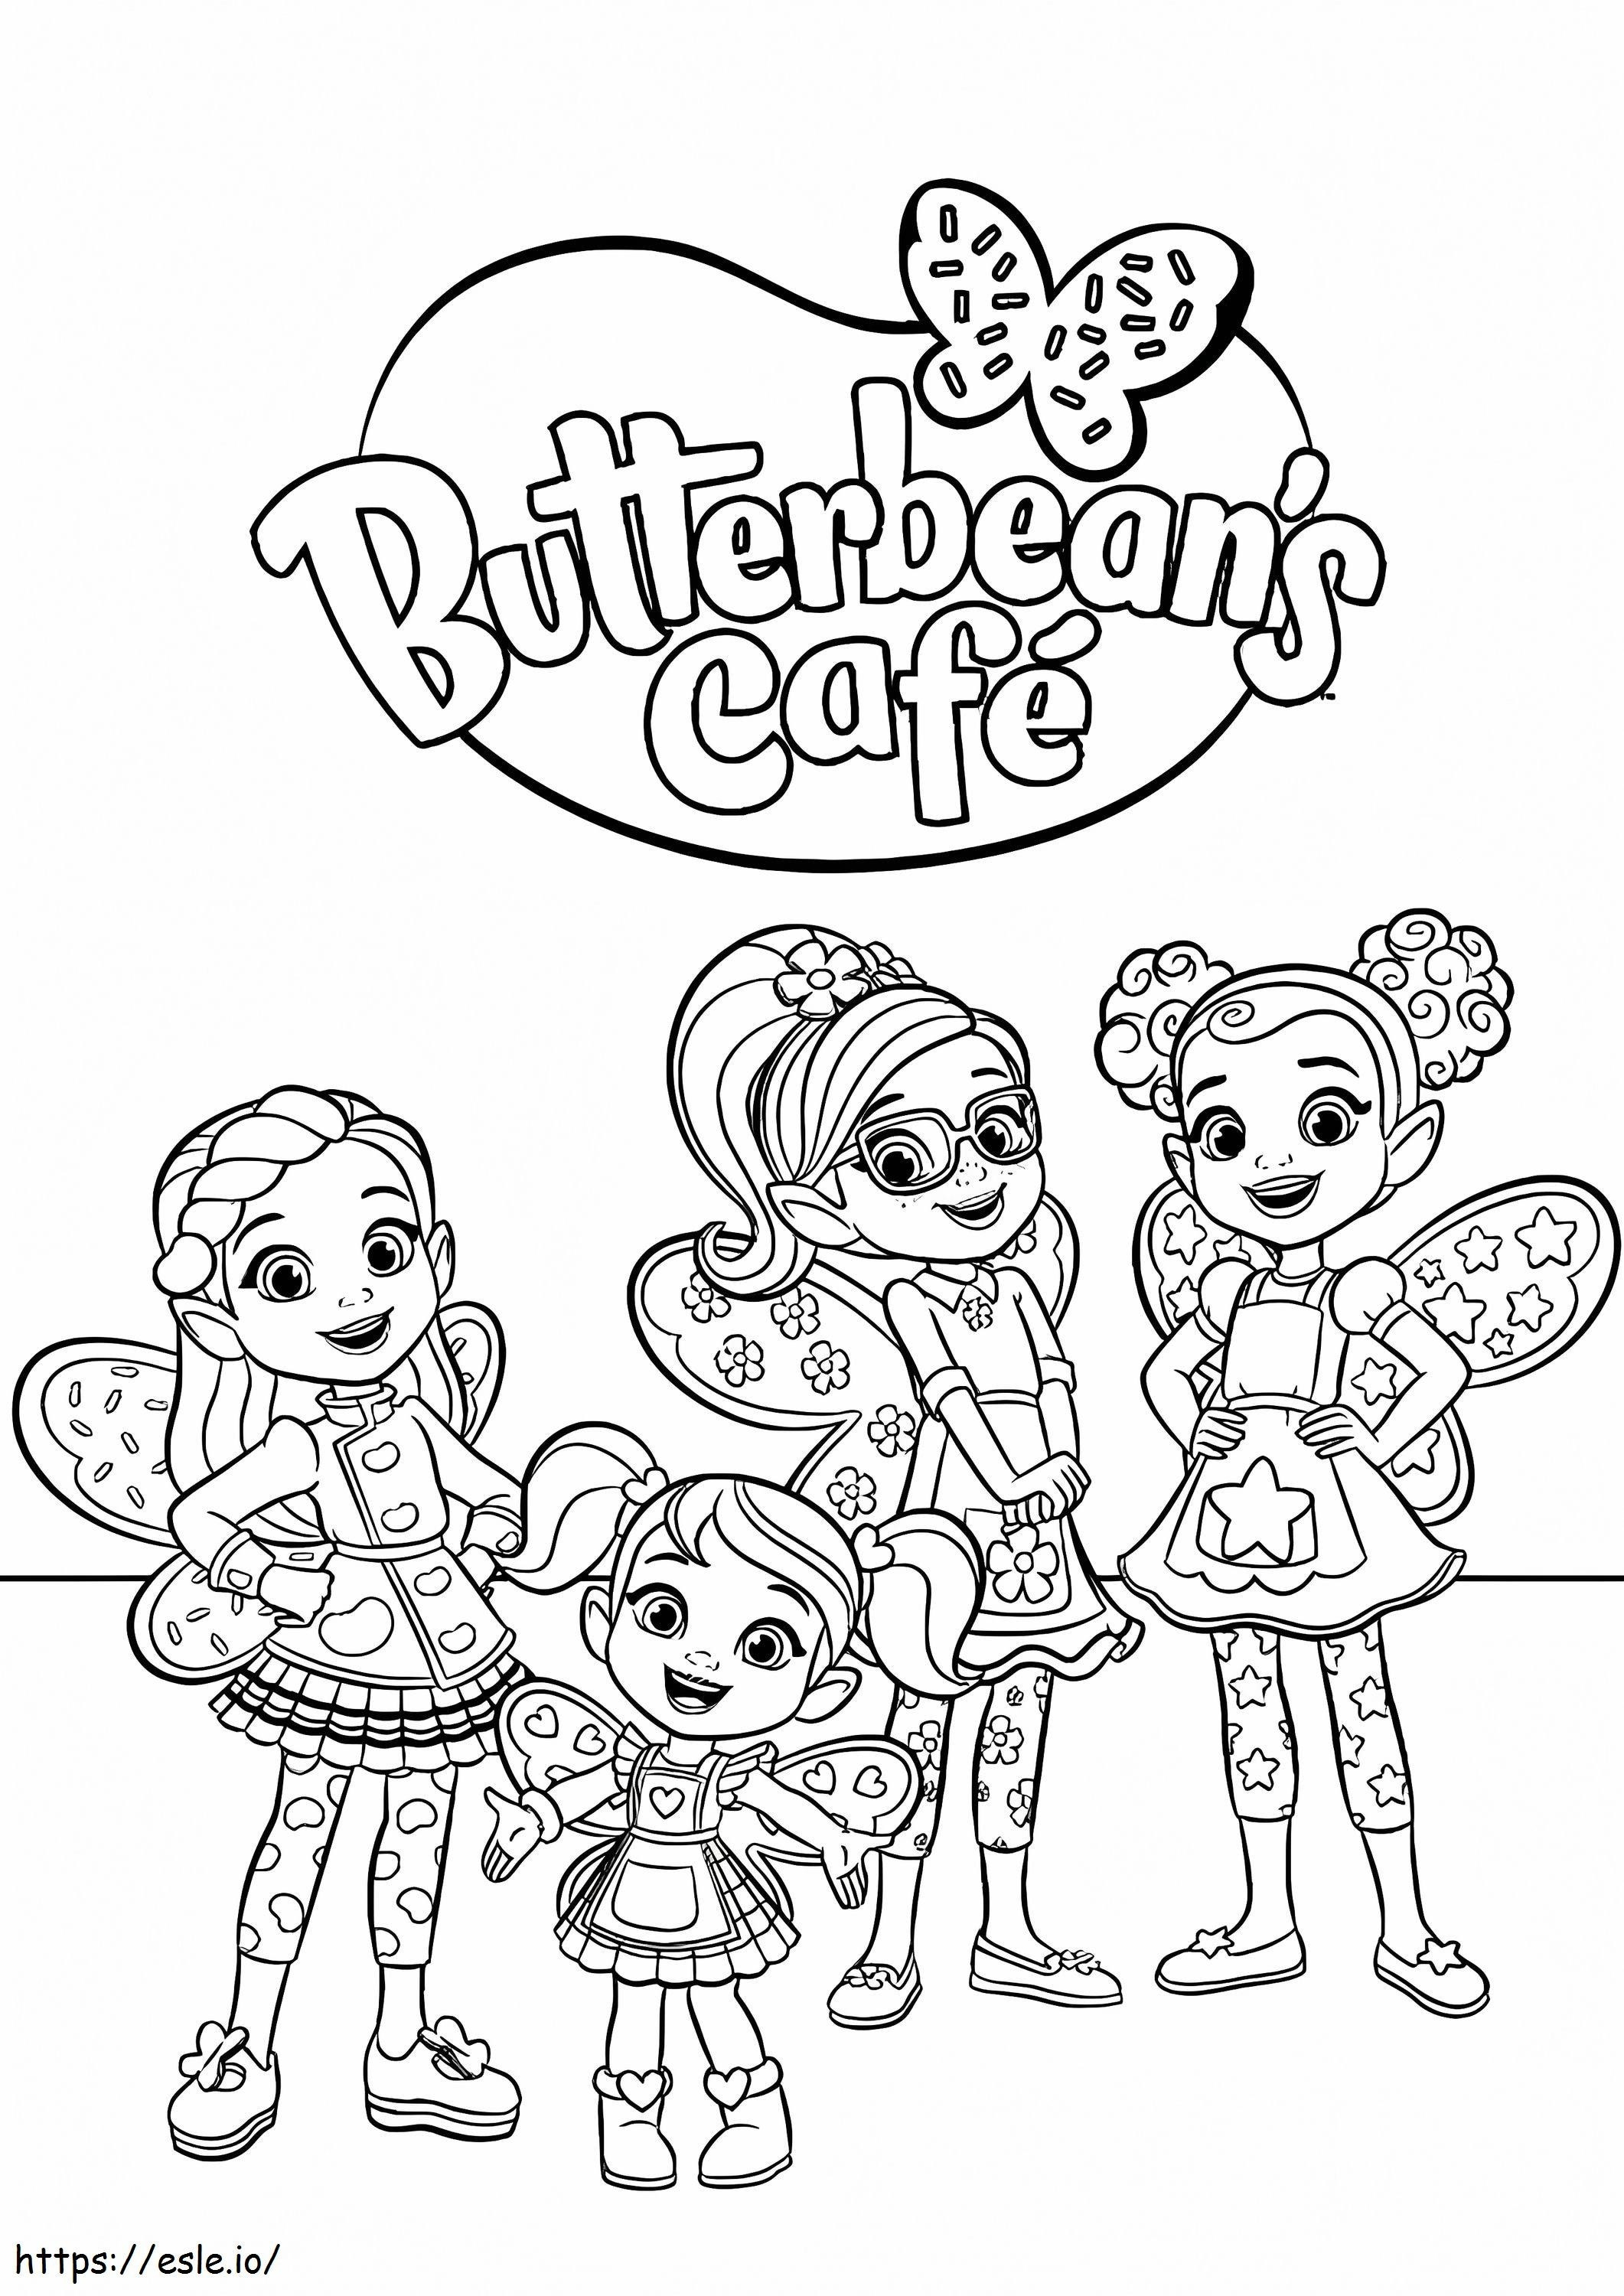 Personajes de Butterbeans Cafe para colorear